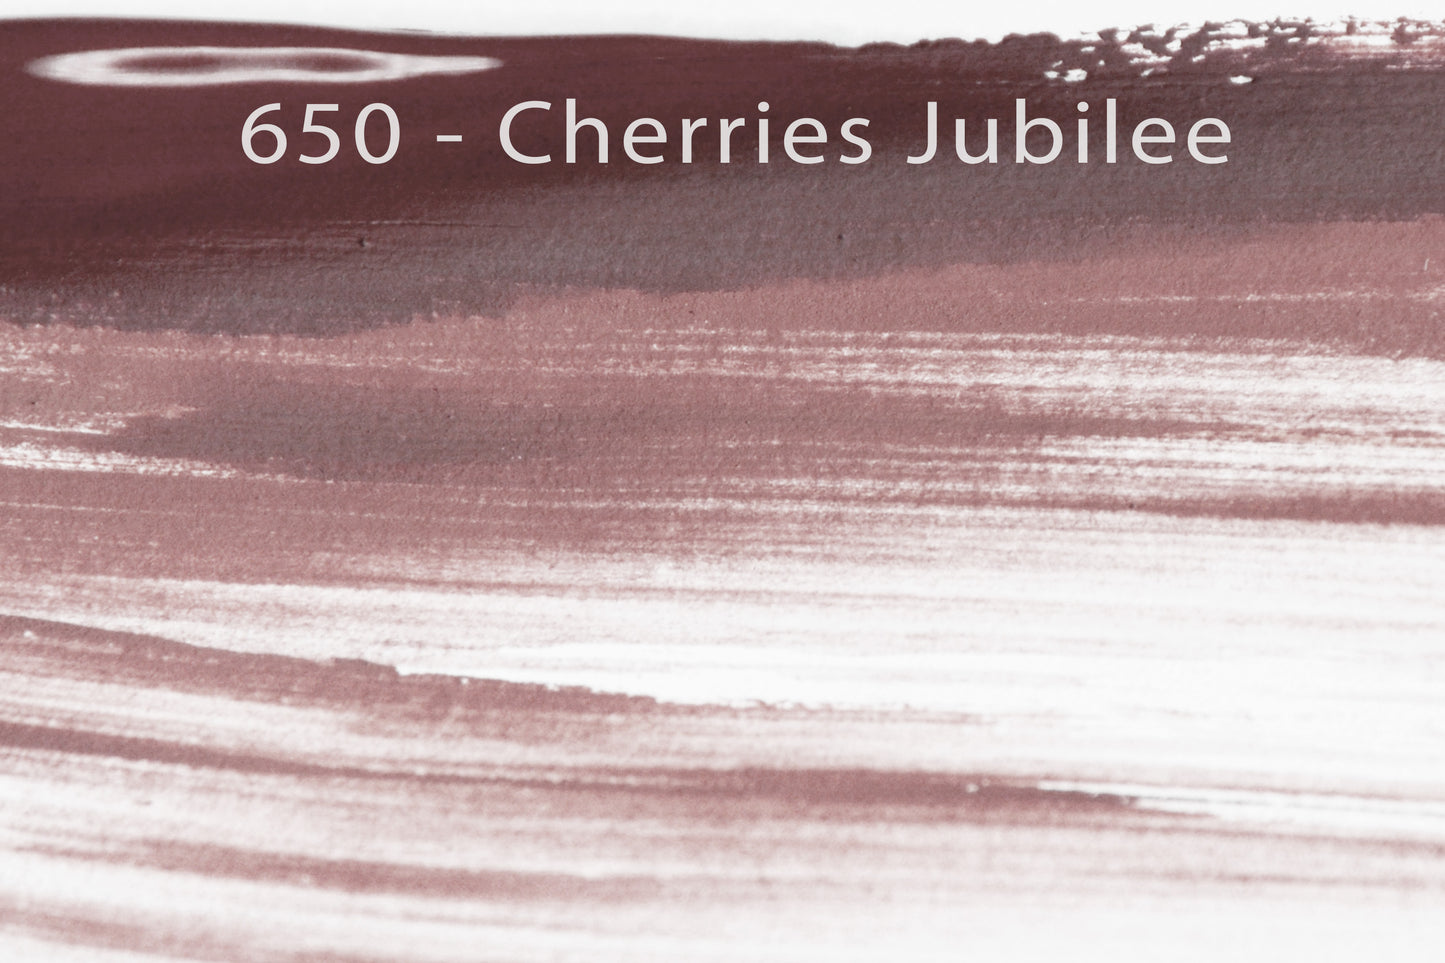 650 - Cherries Jubilee